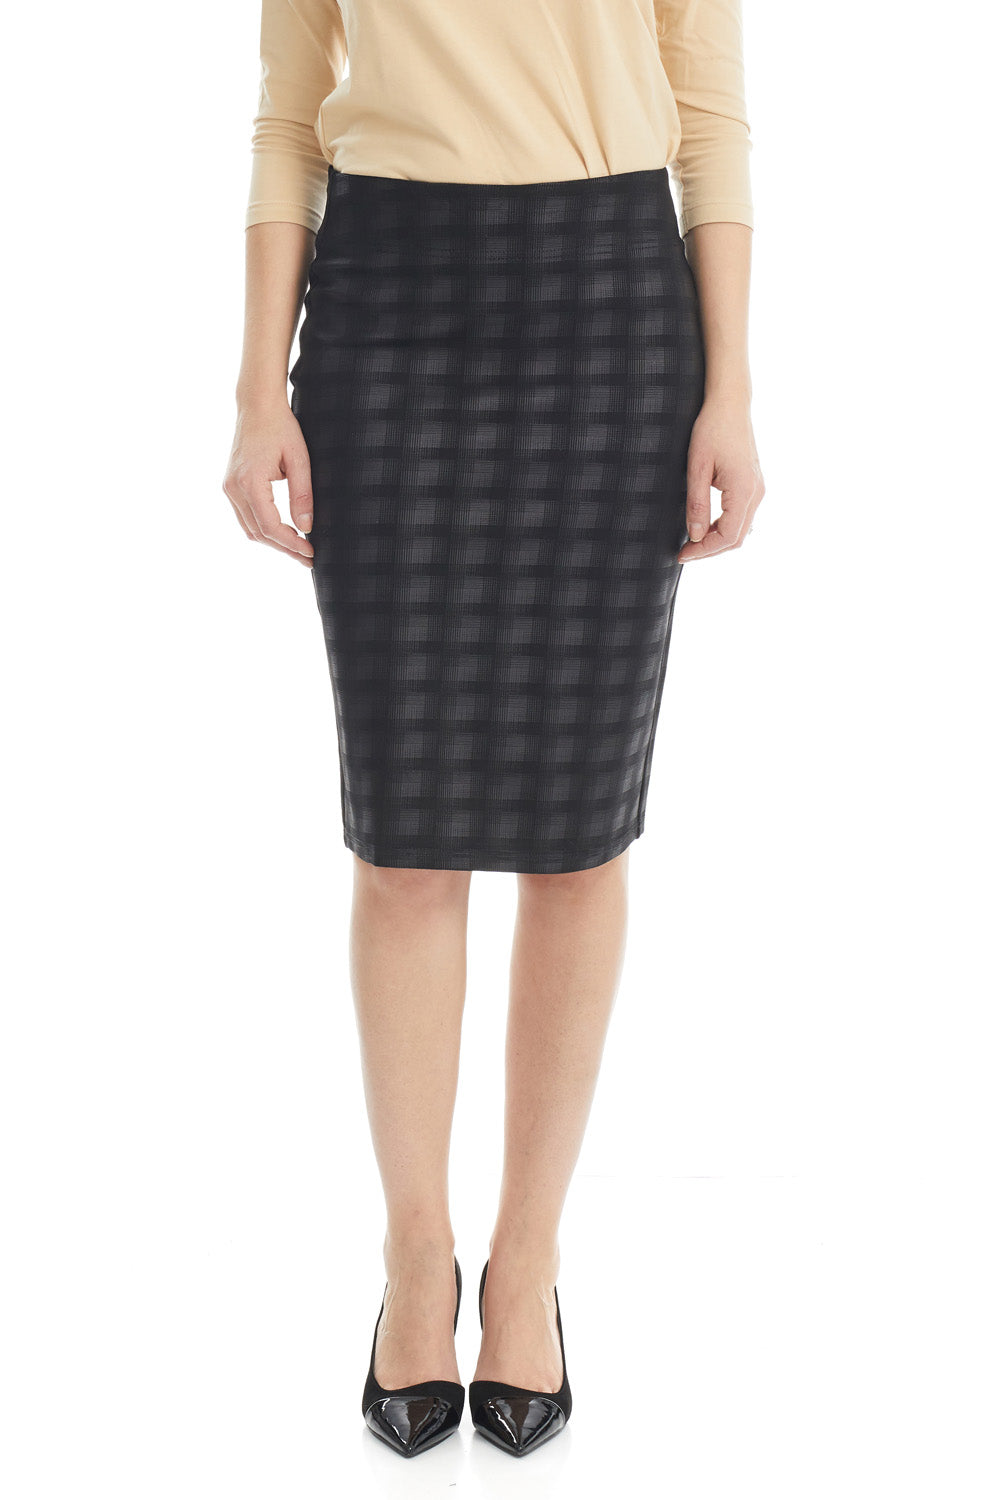 ESTEEZ SOPHIA Skirt - Straight Ponte Skirt for Women - BLACK PLAID